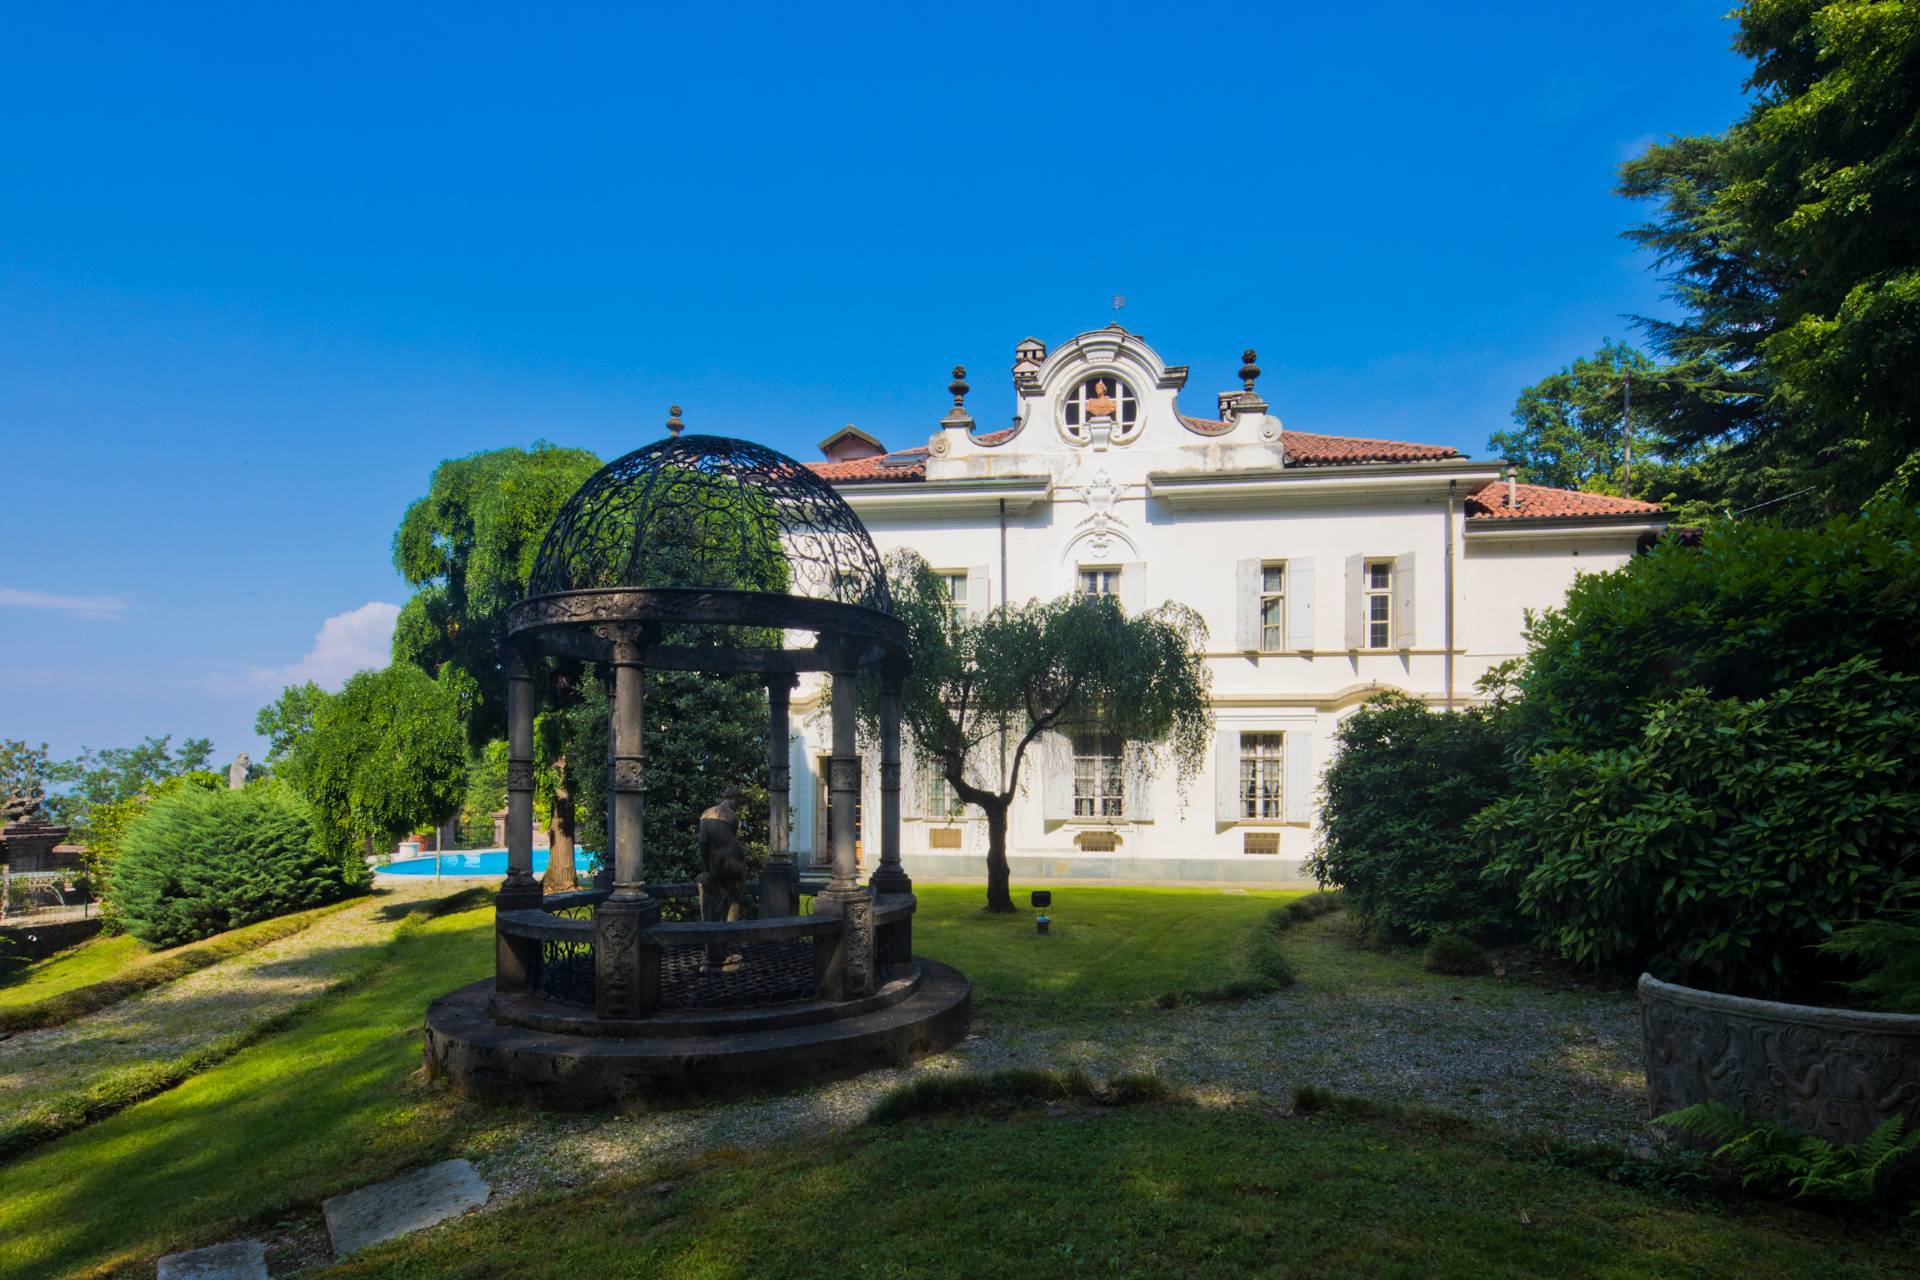 Villa arredata in affitto, San Mauro Torinese collina